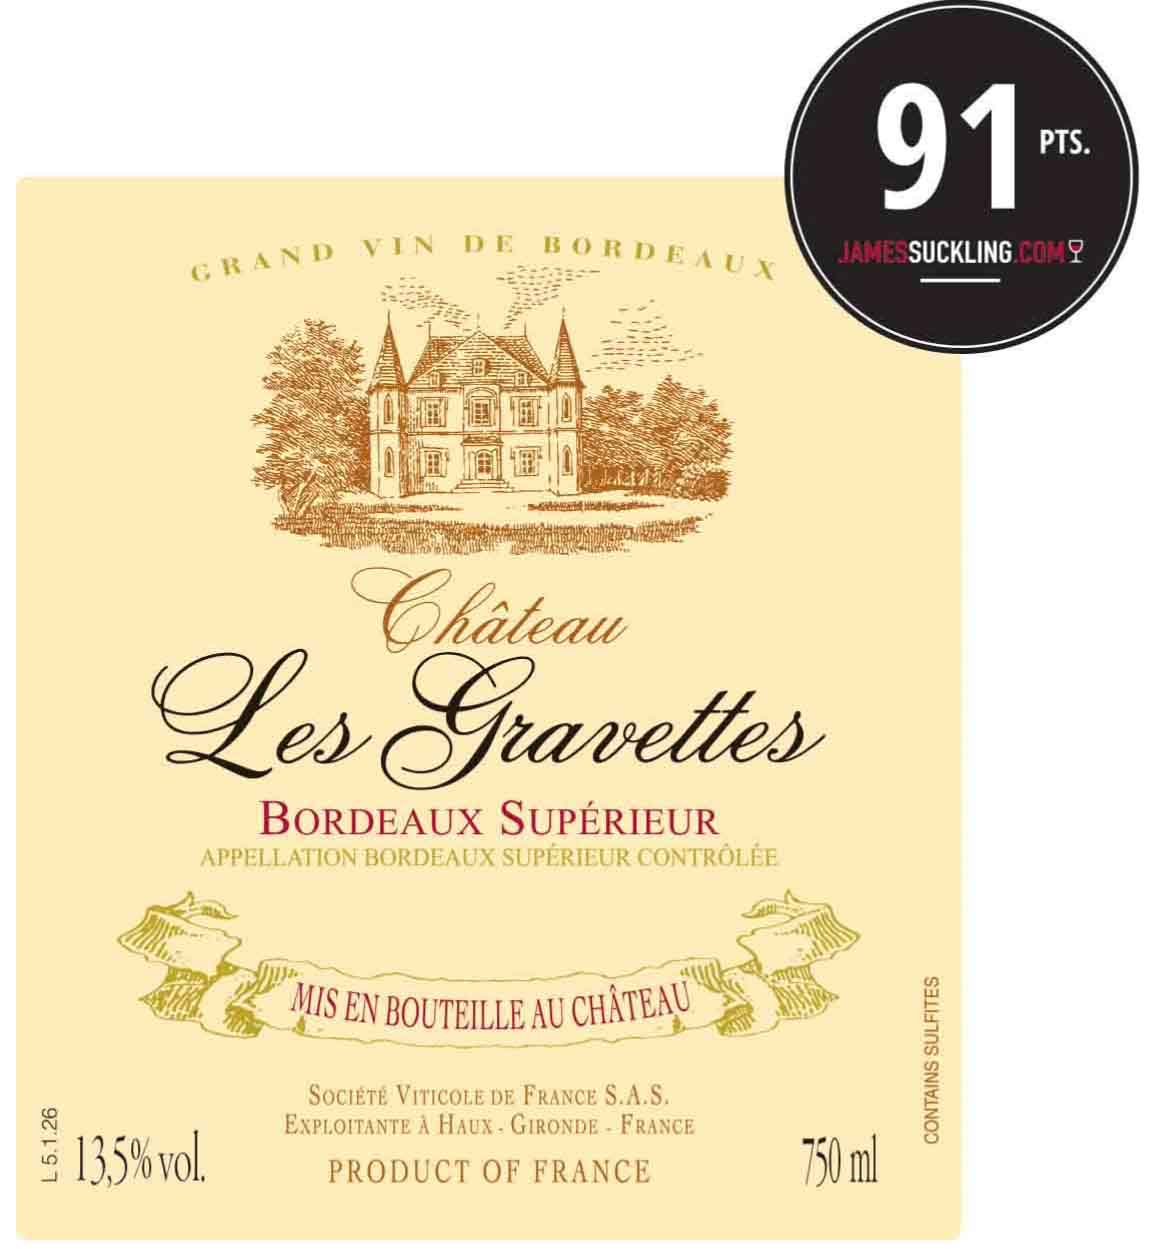 Chateau Les Gravettes - Bordeaux Superieur label